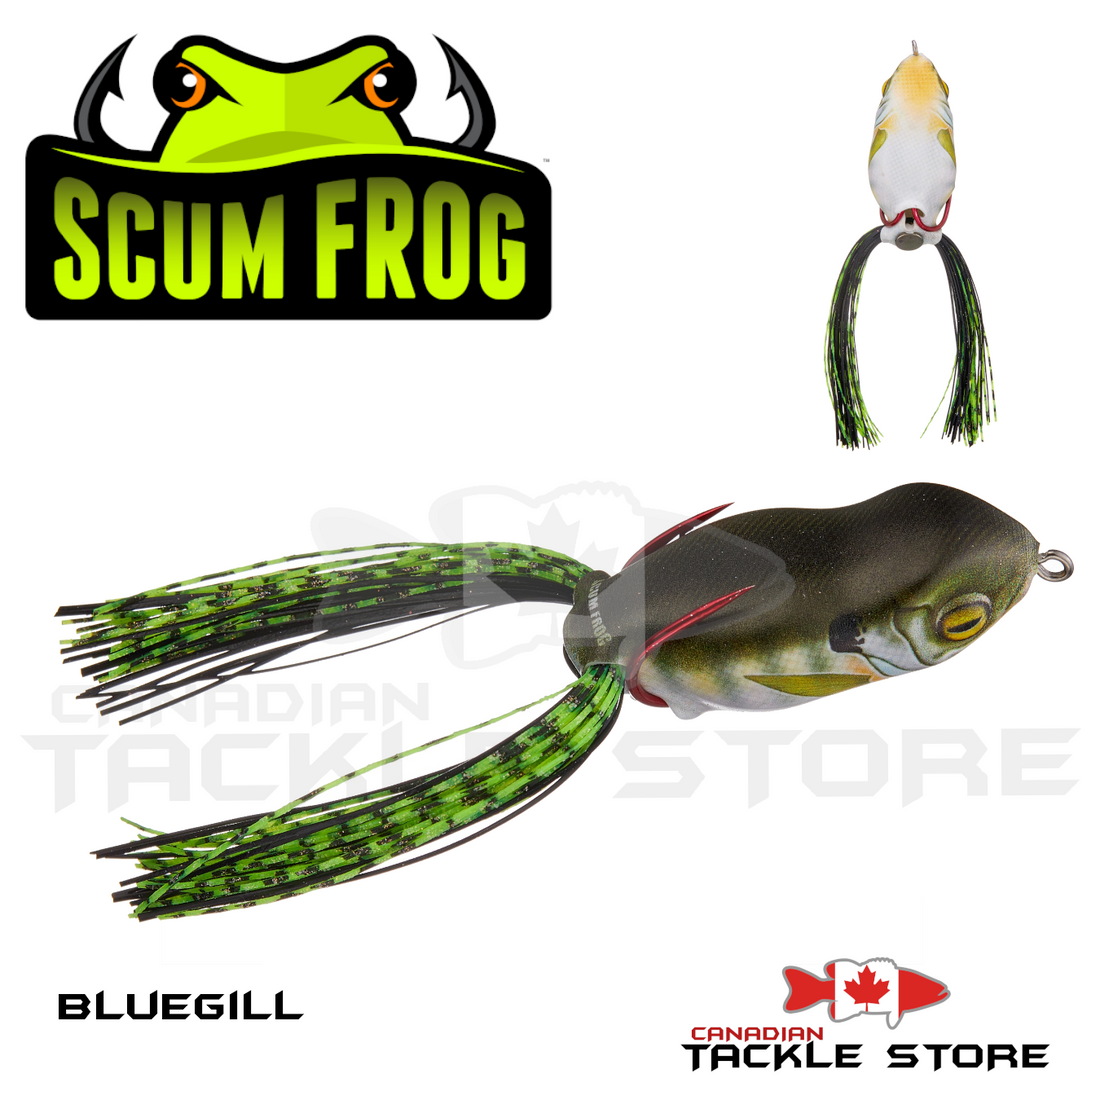 Scum Frog Launch Frog